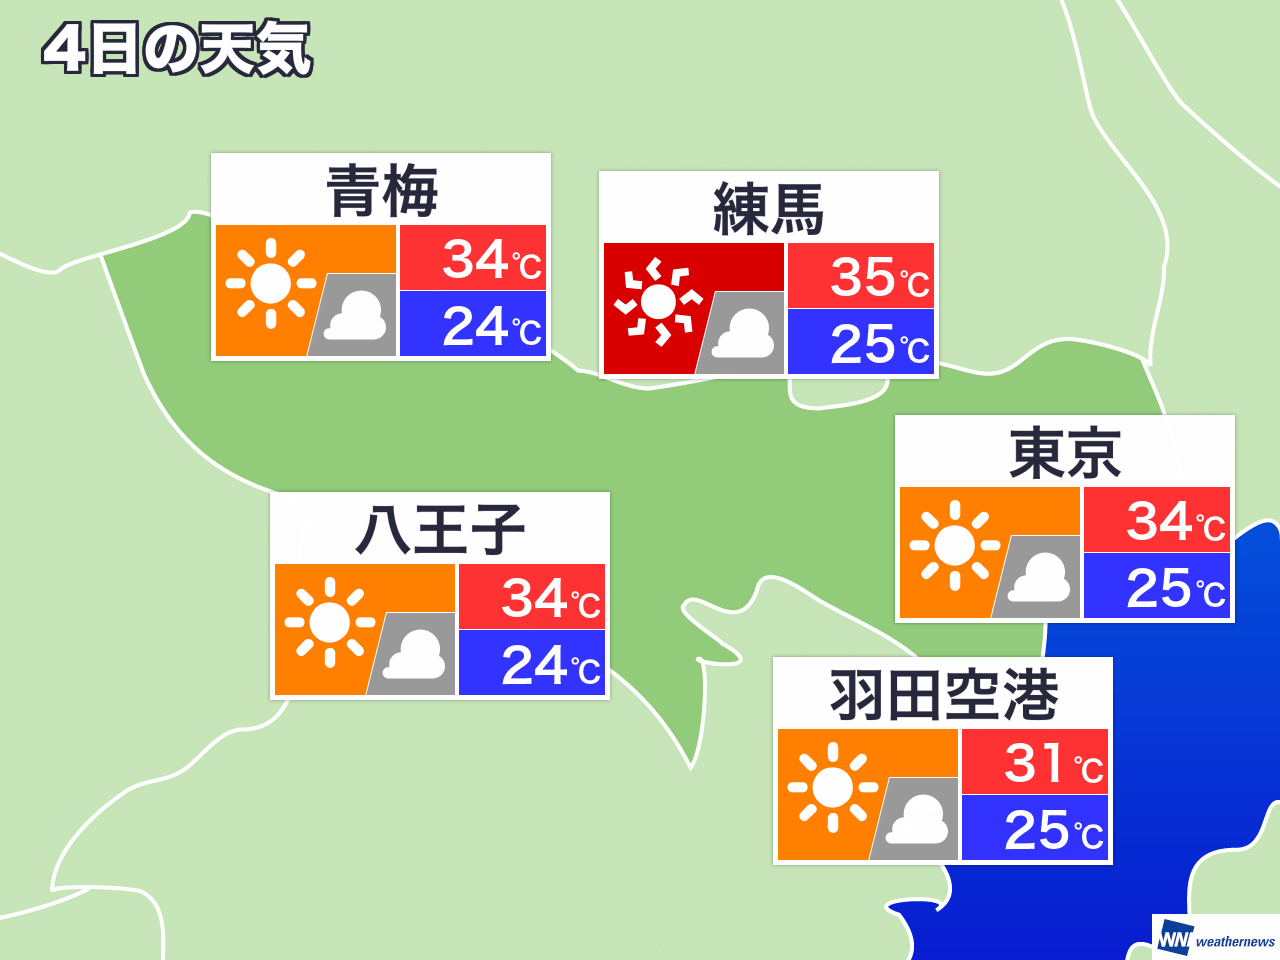 9月18日 水 東京都の明日の天気 ウェザーニュース